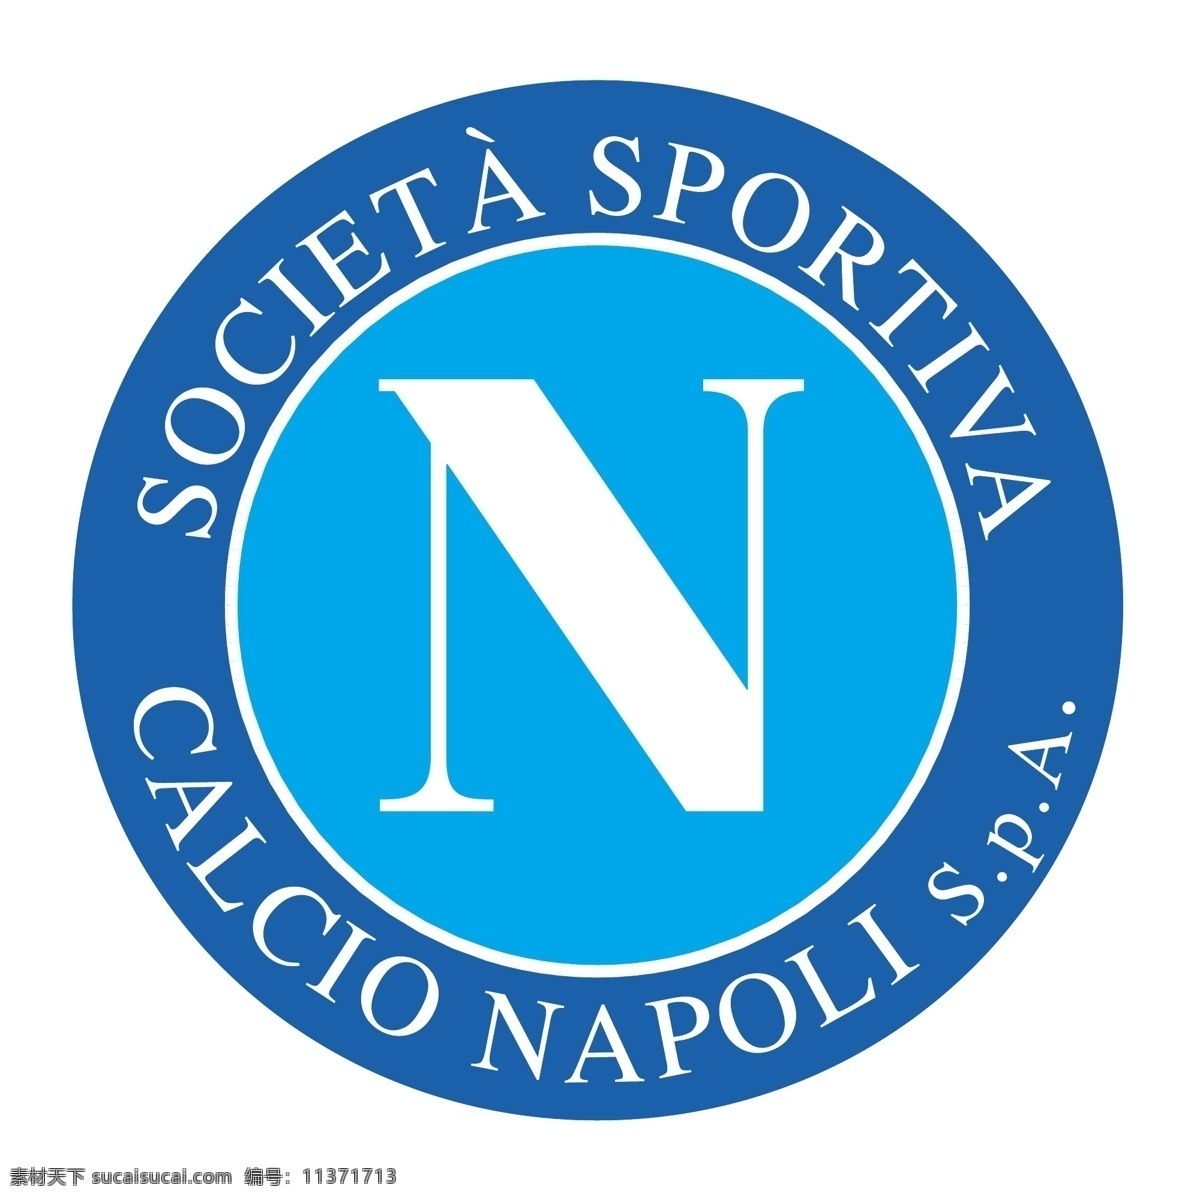 意大利 那不勒斯 免费 标志 标识 意甲 psd源文件 logo设计